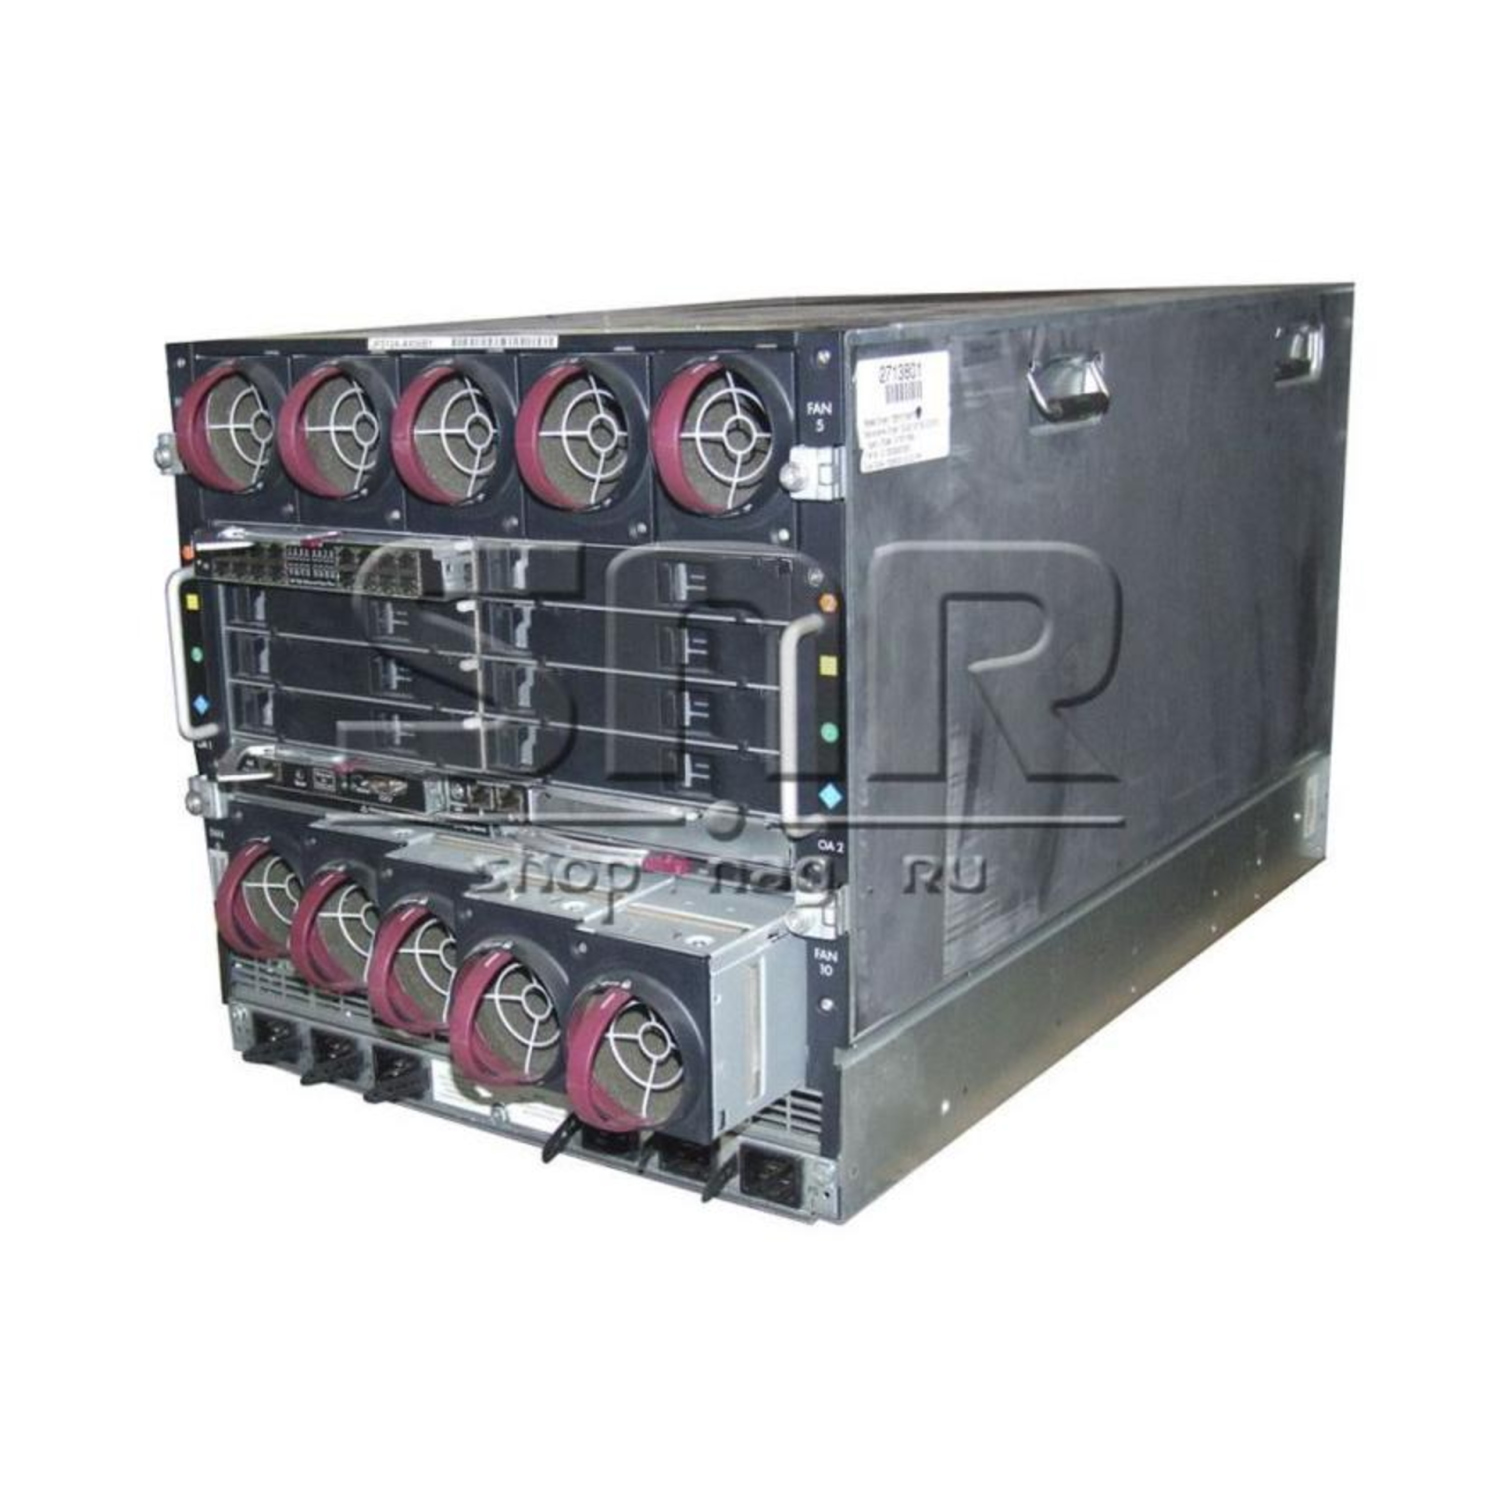 Шасси HP для блейд-системы c7000 G3, скомплектованное (6x PS, 2x Admin, 10x Fan, 1x Single Phase AC Input, 1x RailKit)